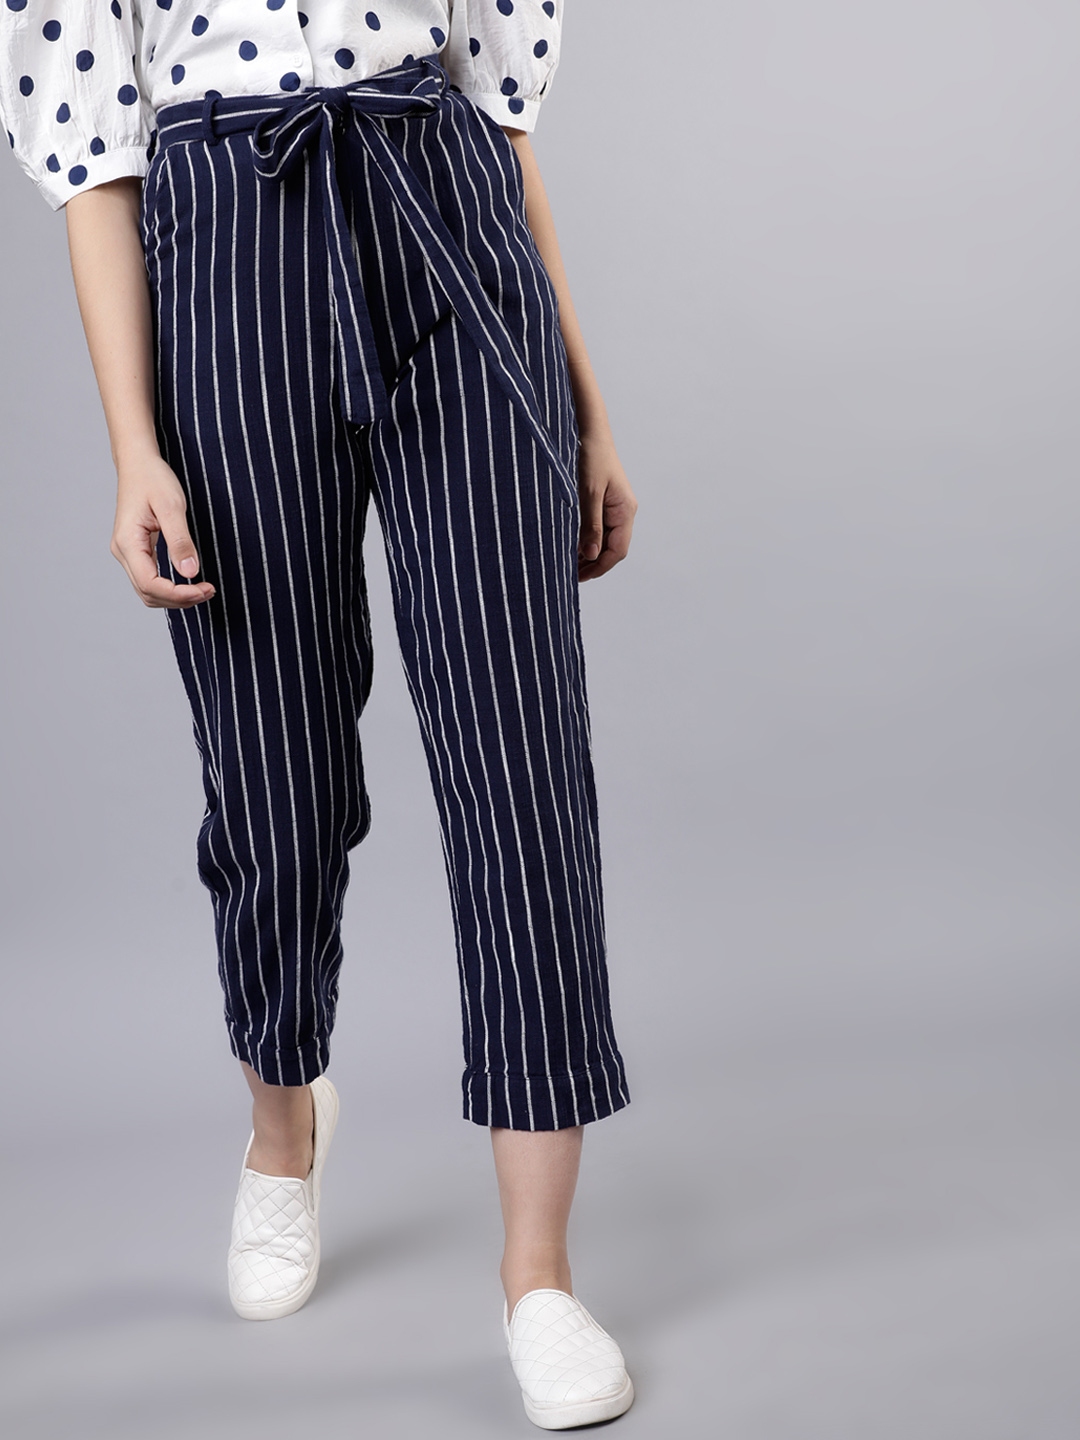 Buy Tokyo Talkies Women Navy Blue & White Regular Fit Striped Regular ...